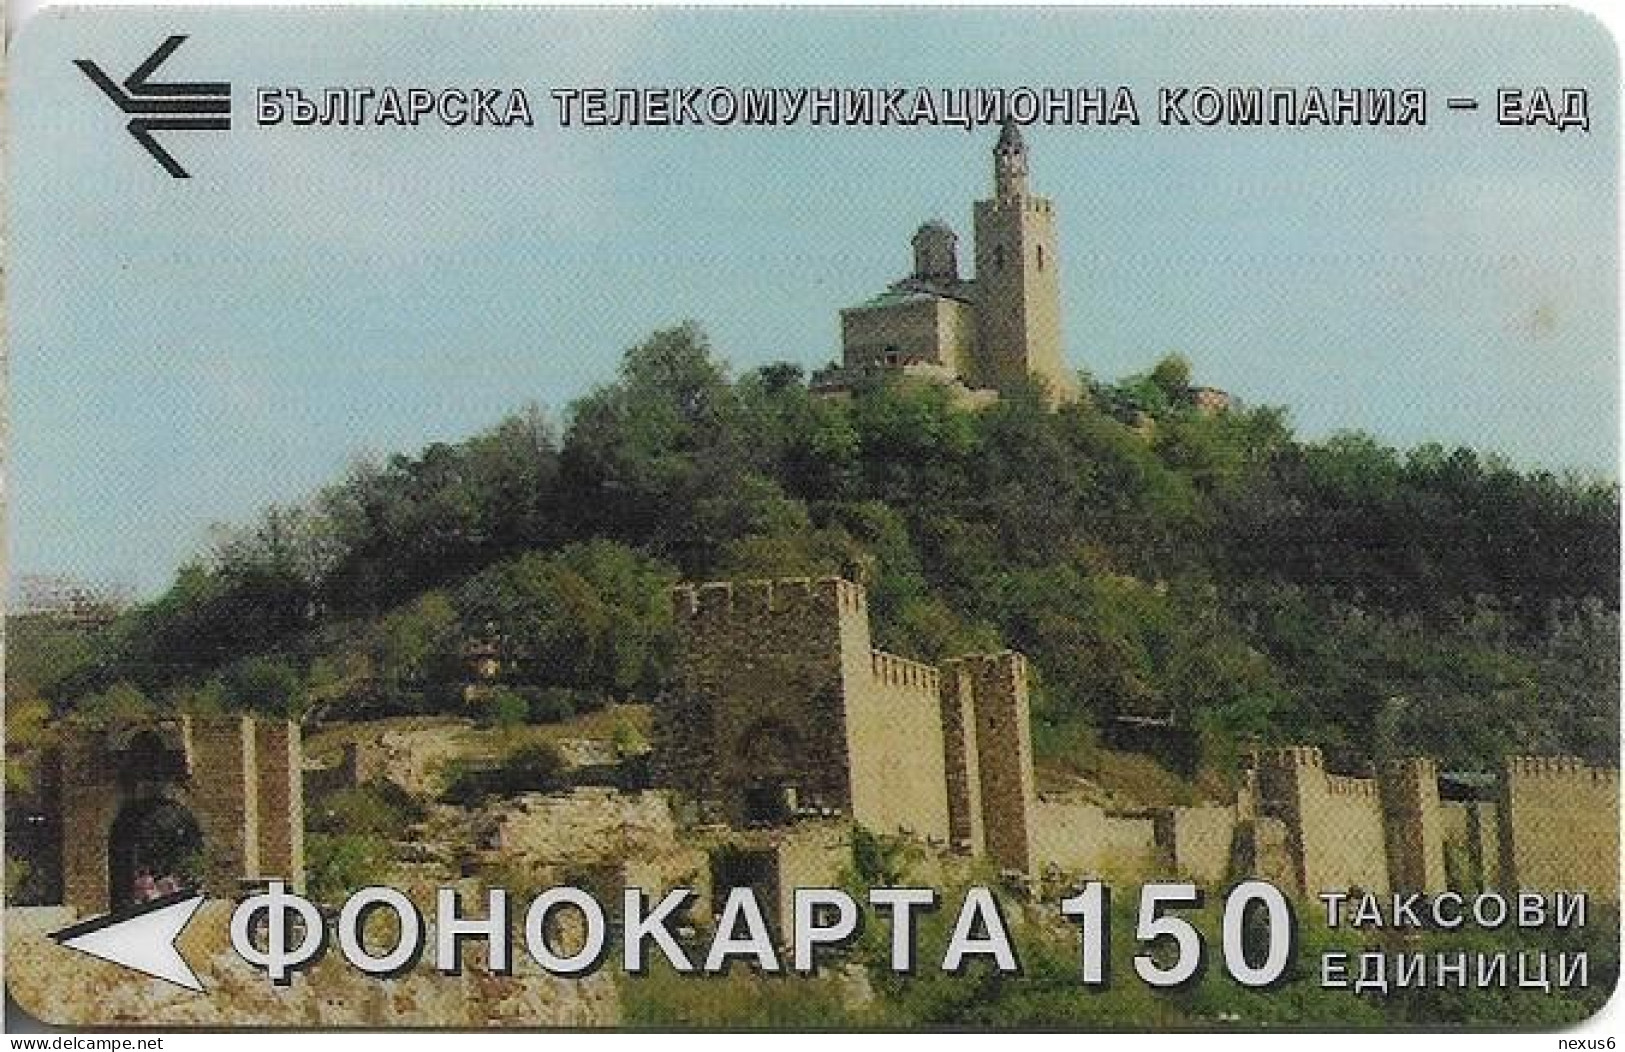 Bulgaria - BTC (Magnetic) - Landscape 2, 1995, 150L, 15.000ex, Used - Bulgaria